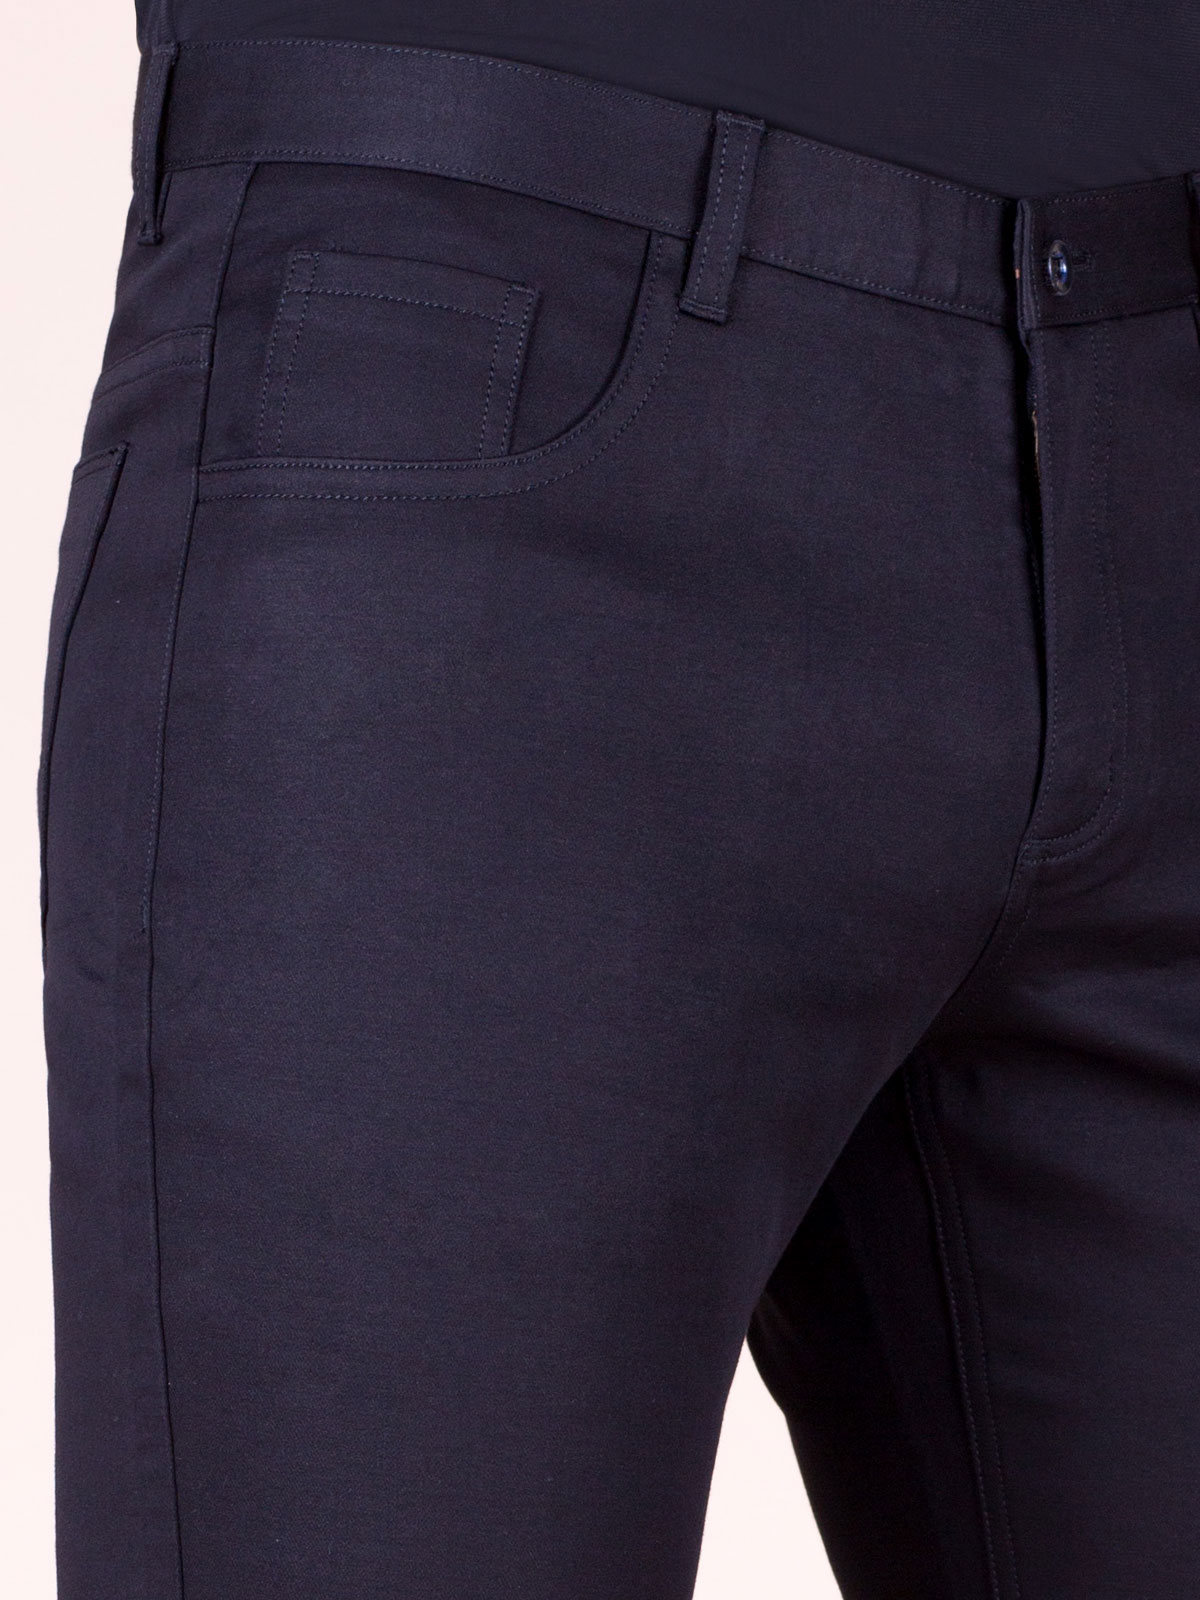 Черен панталон с пет джоба - 60240 33.00 лв img3